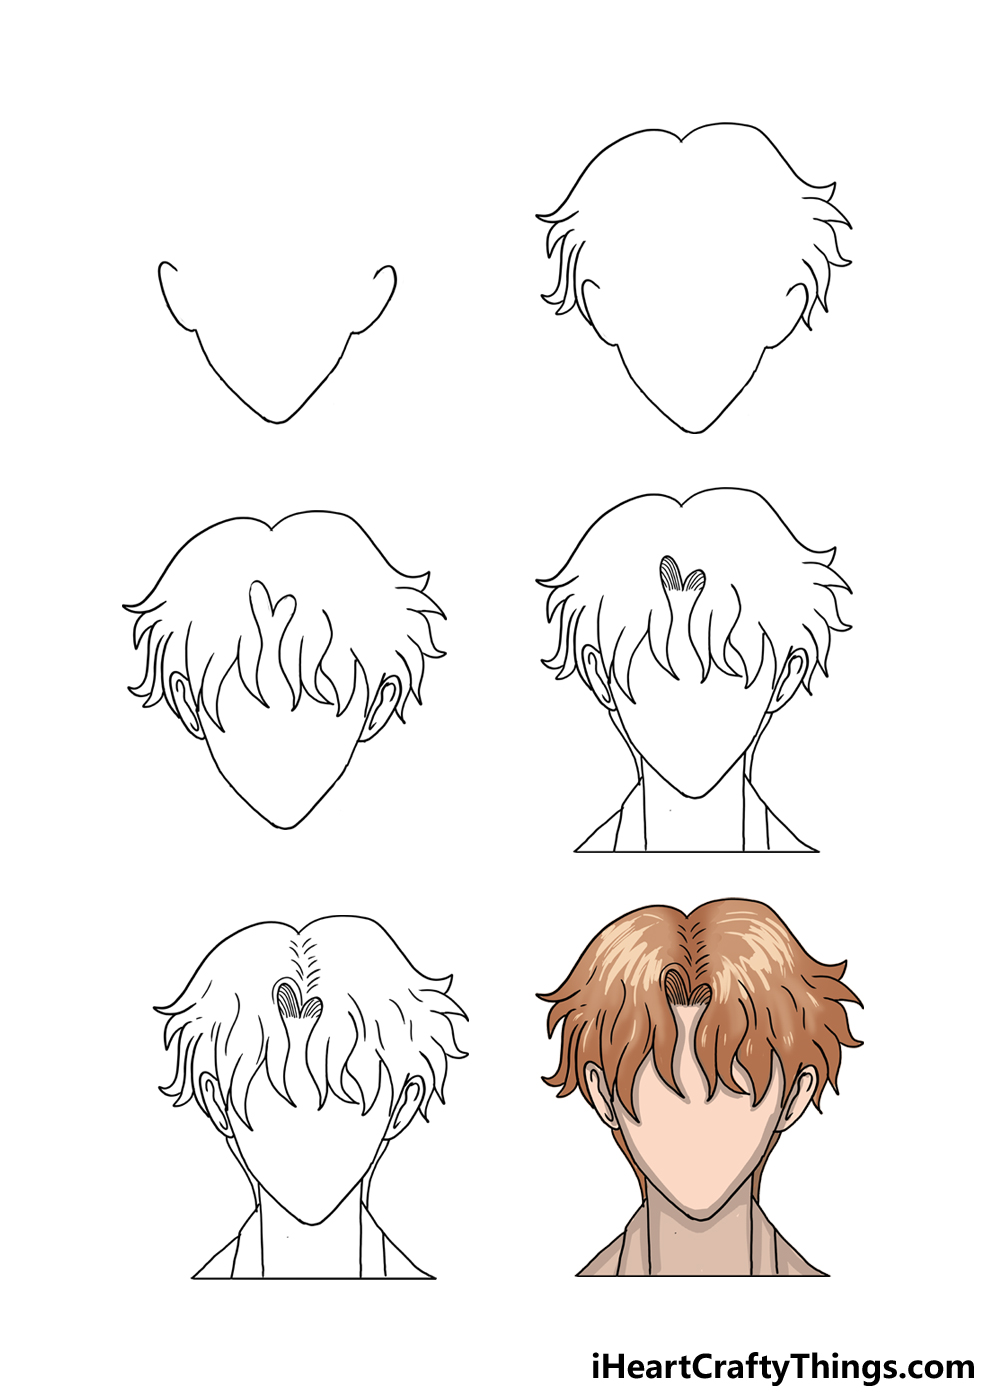 How to Draw Anime Boys Hair